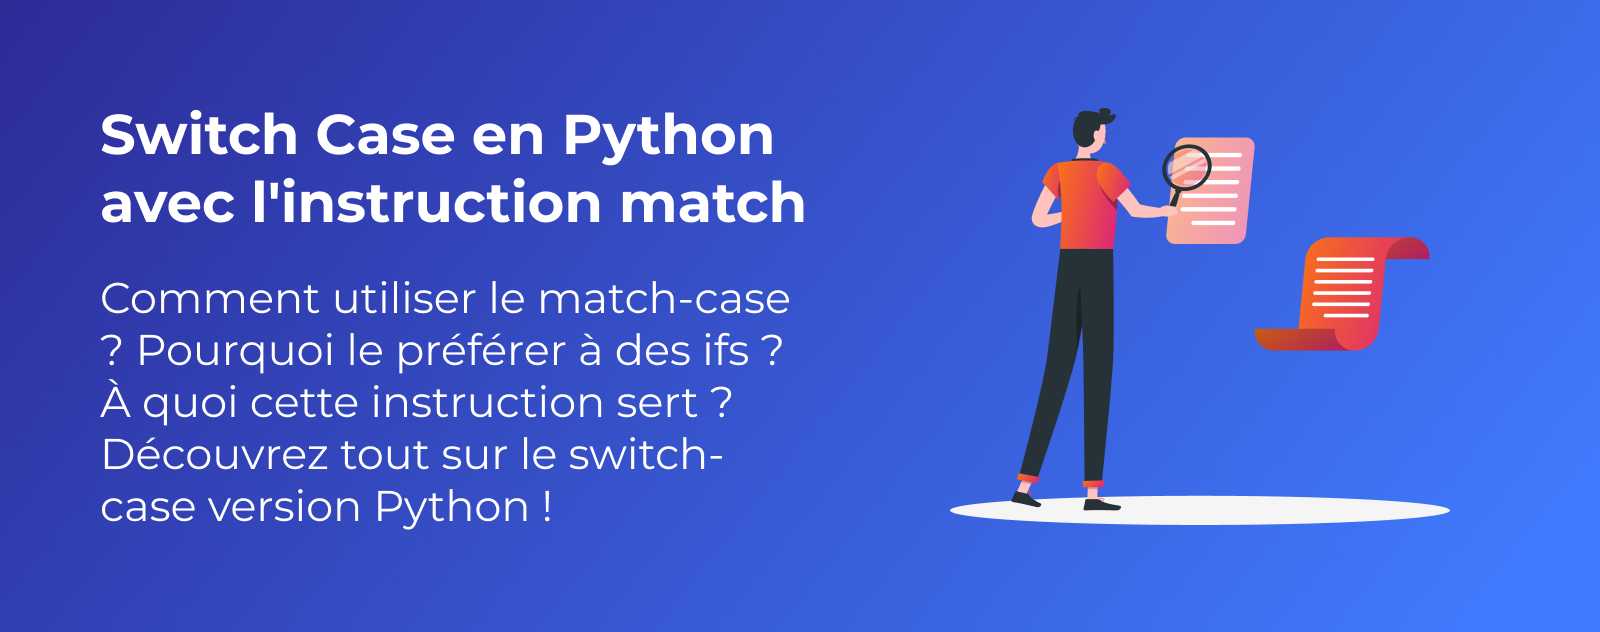 Switch Case en Python avec l'instruction match